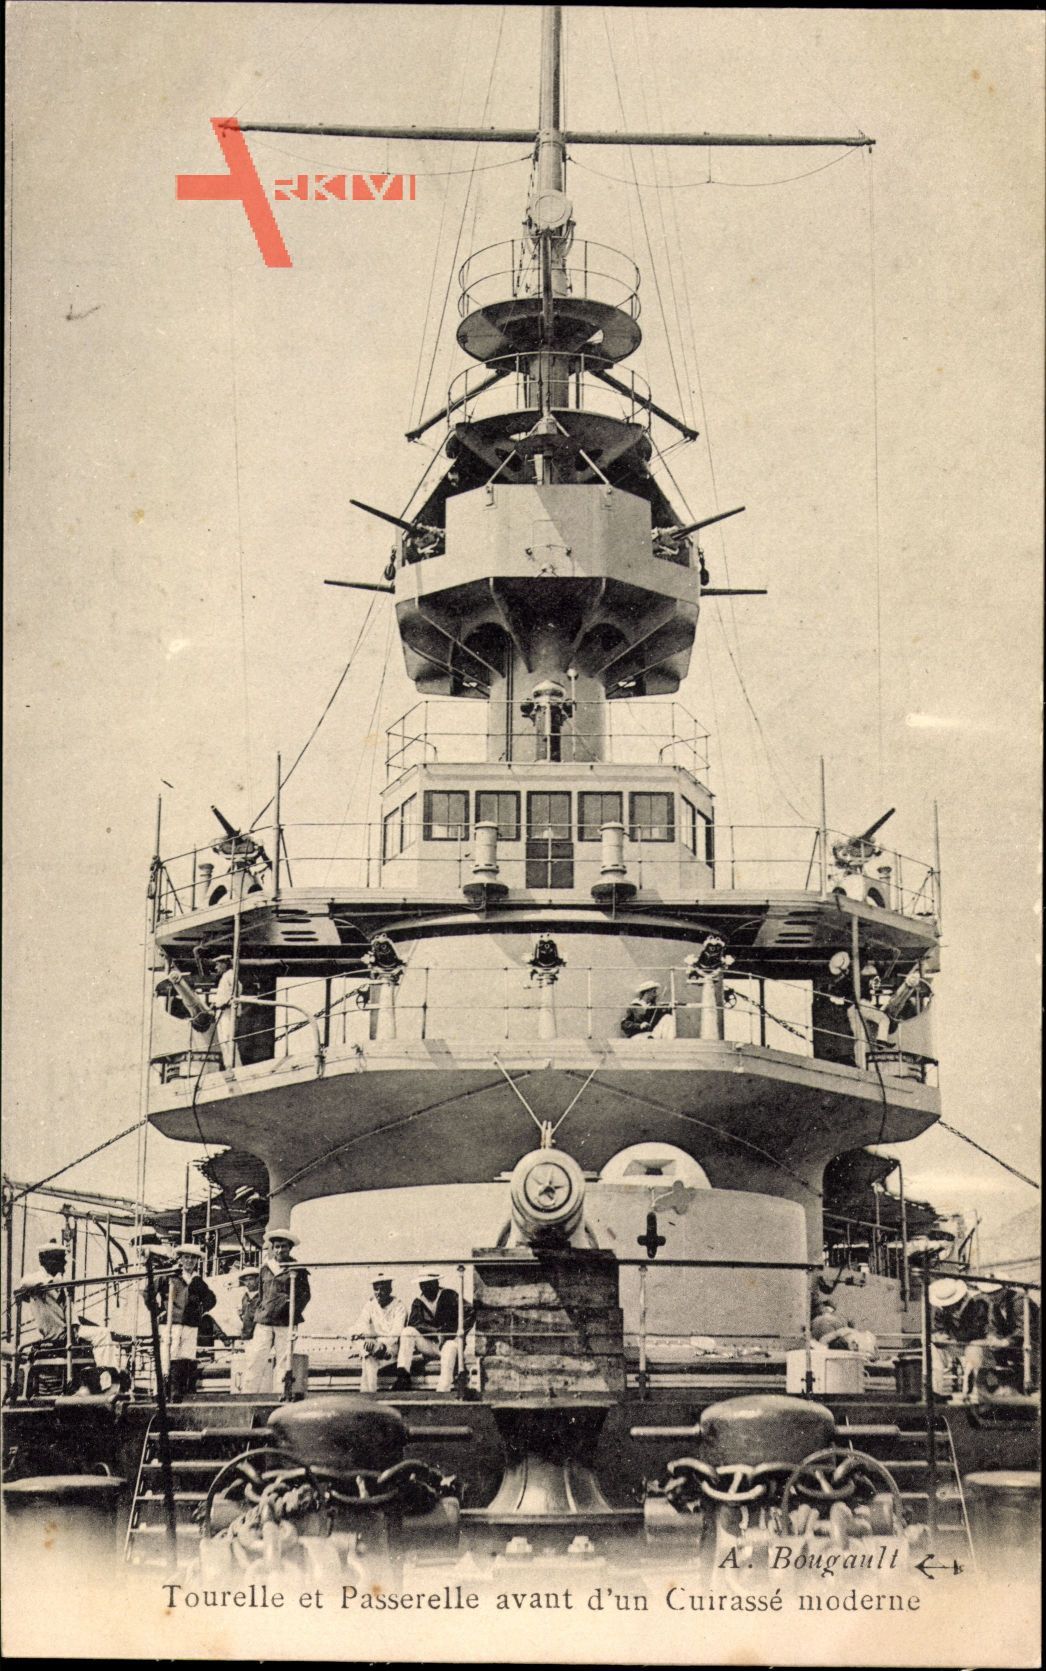 Französisches Kriegsschiff, Tourelle et Passerelle, Cuirassé moderne